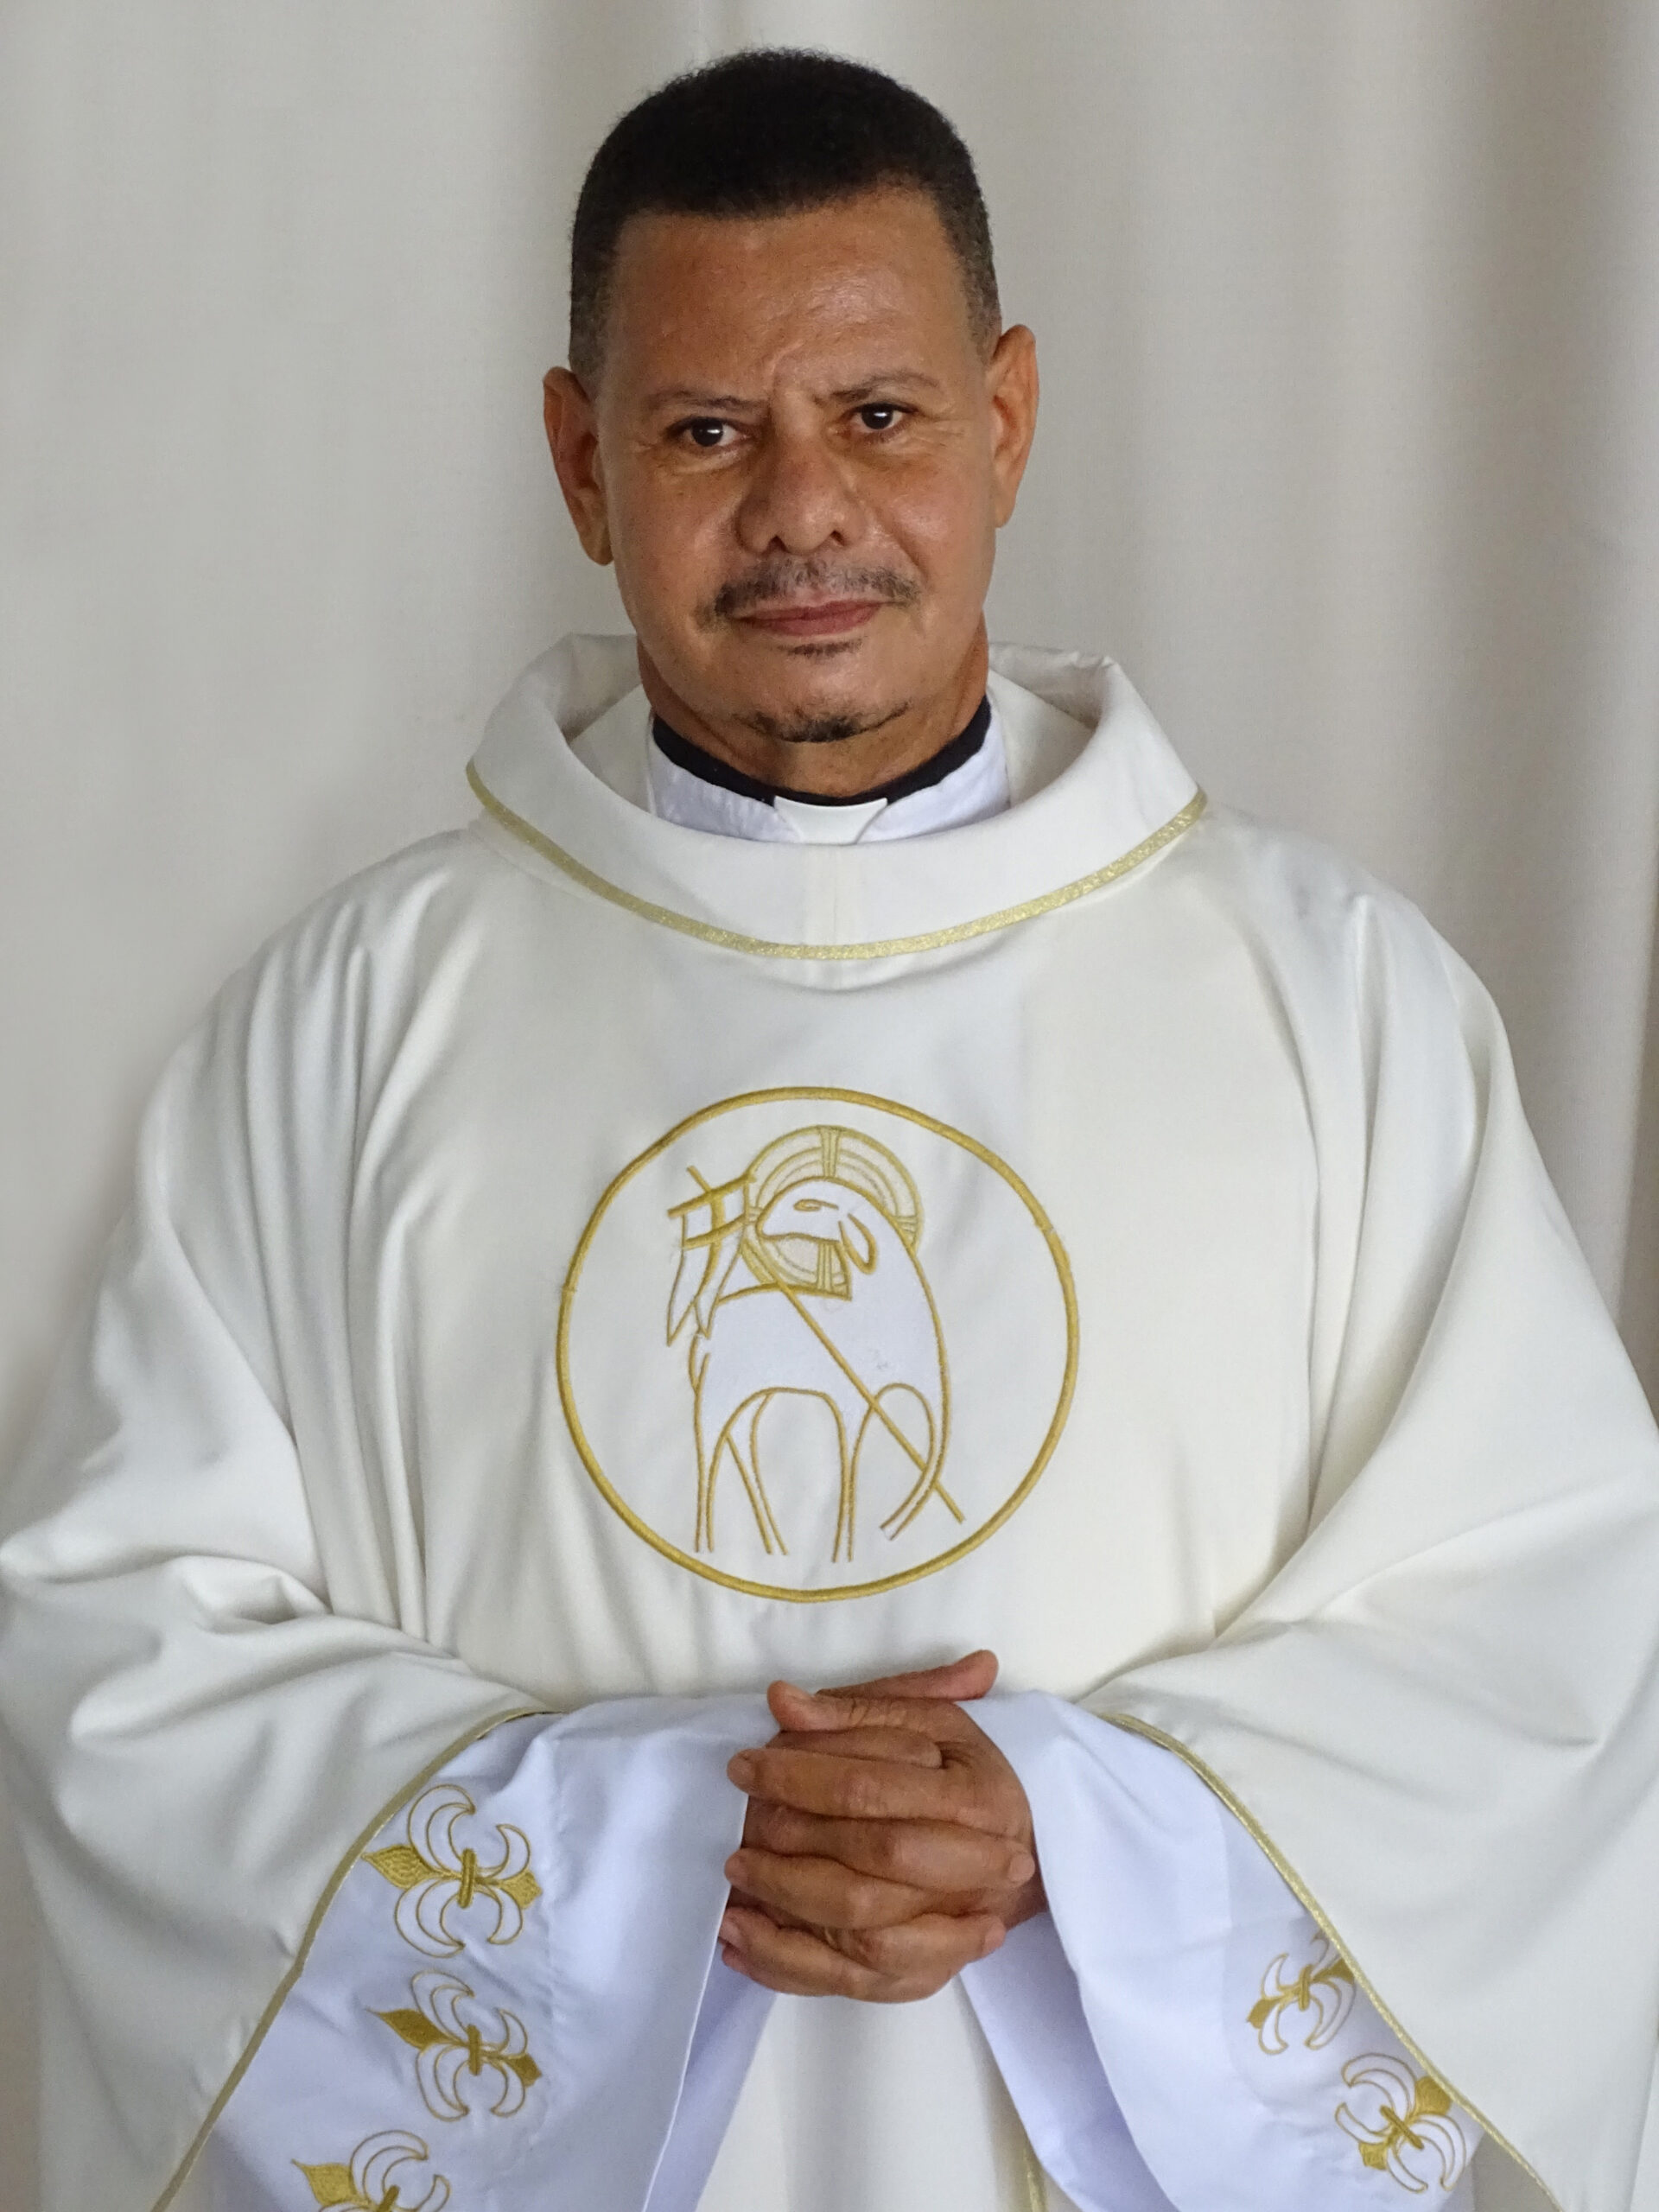 Pe. José Elias Luciano da Silva - Diocese de Ipameri